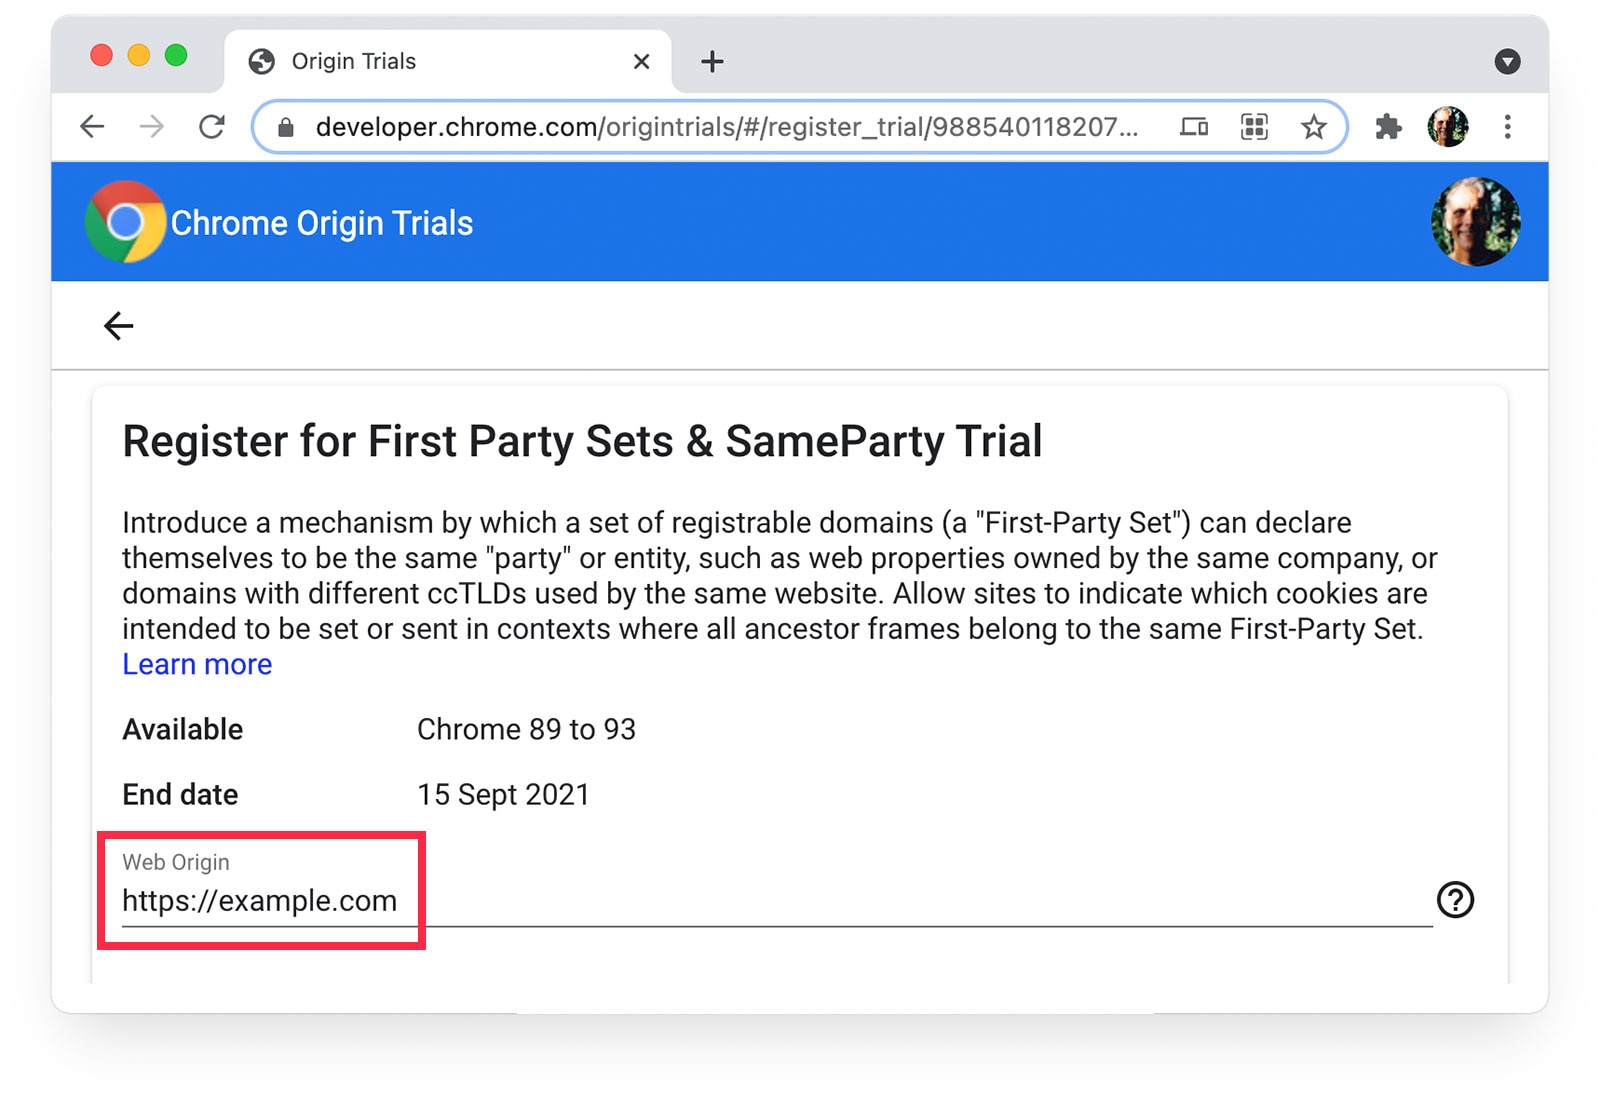 Wersje próbne origin Chrome 
z zaznaczoną stroną https://example.com wybraną jako źródło internetowe.